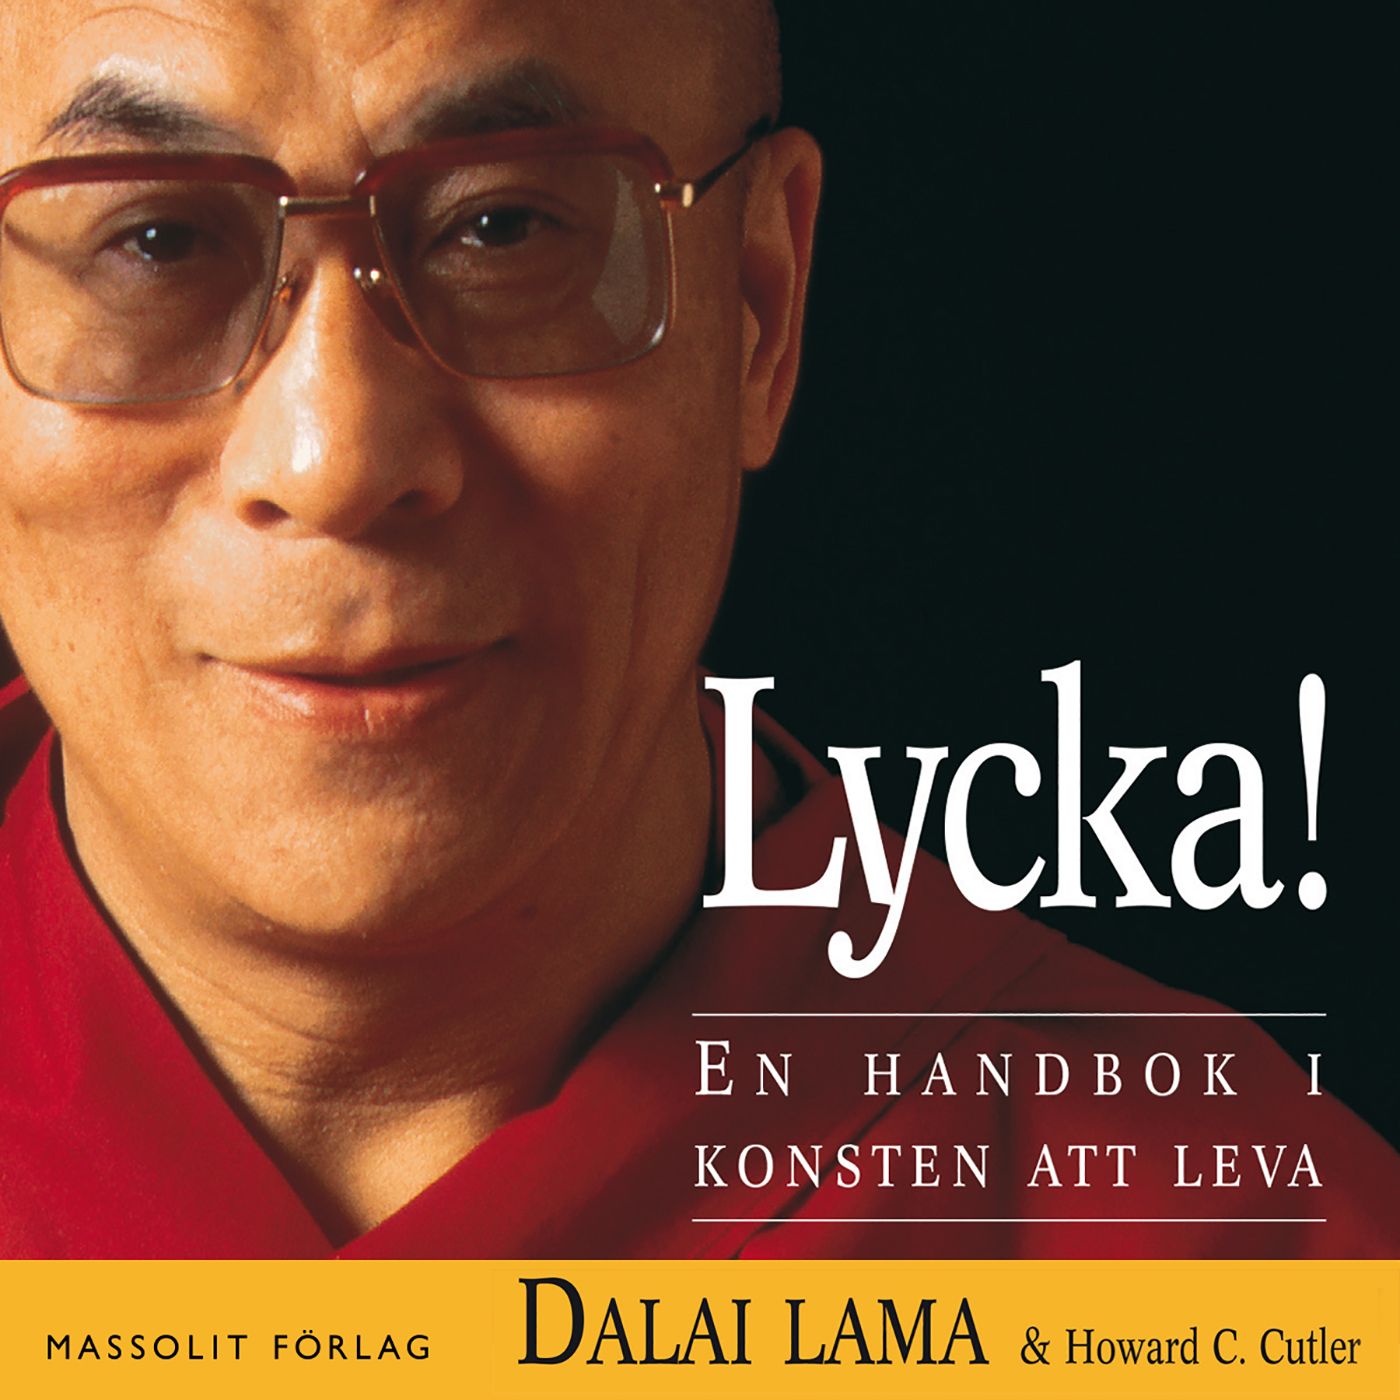 Lycka! En handbok i konsten att leva, audiobook by Howard C Cutler, Dalai Lama